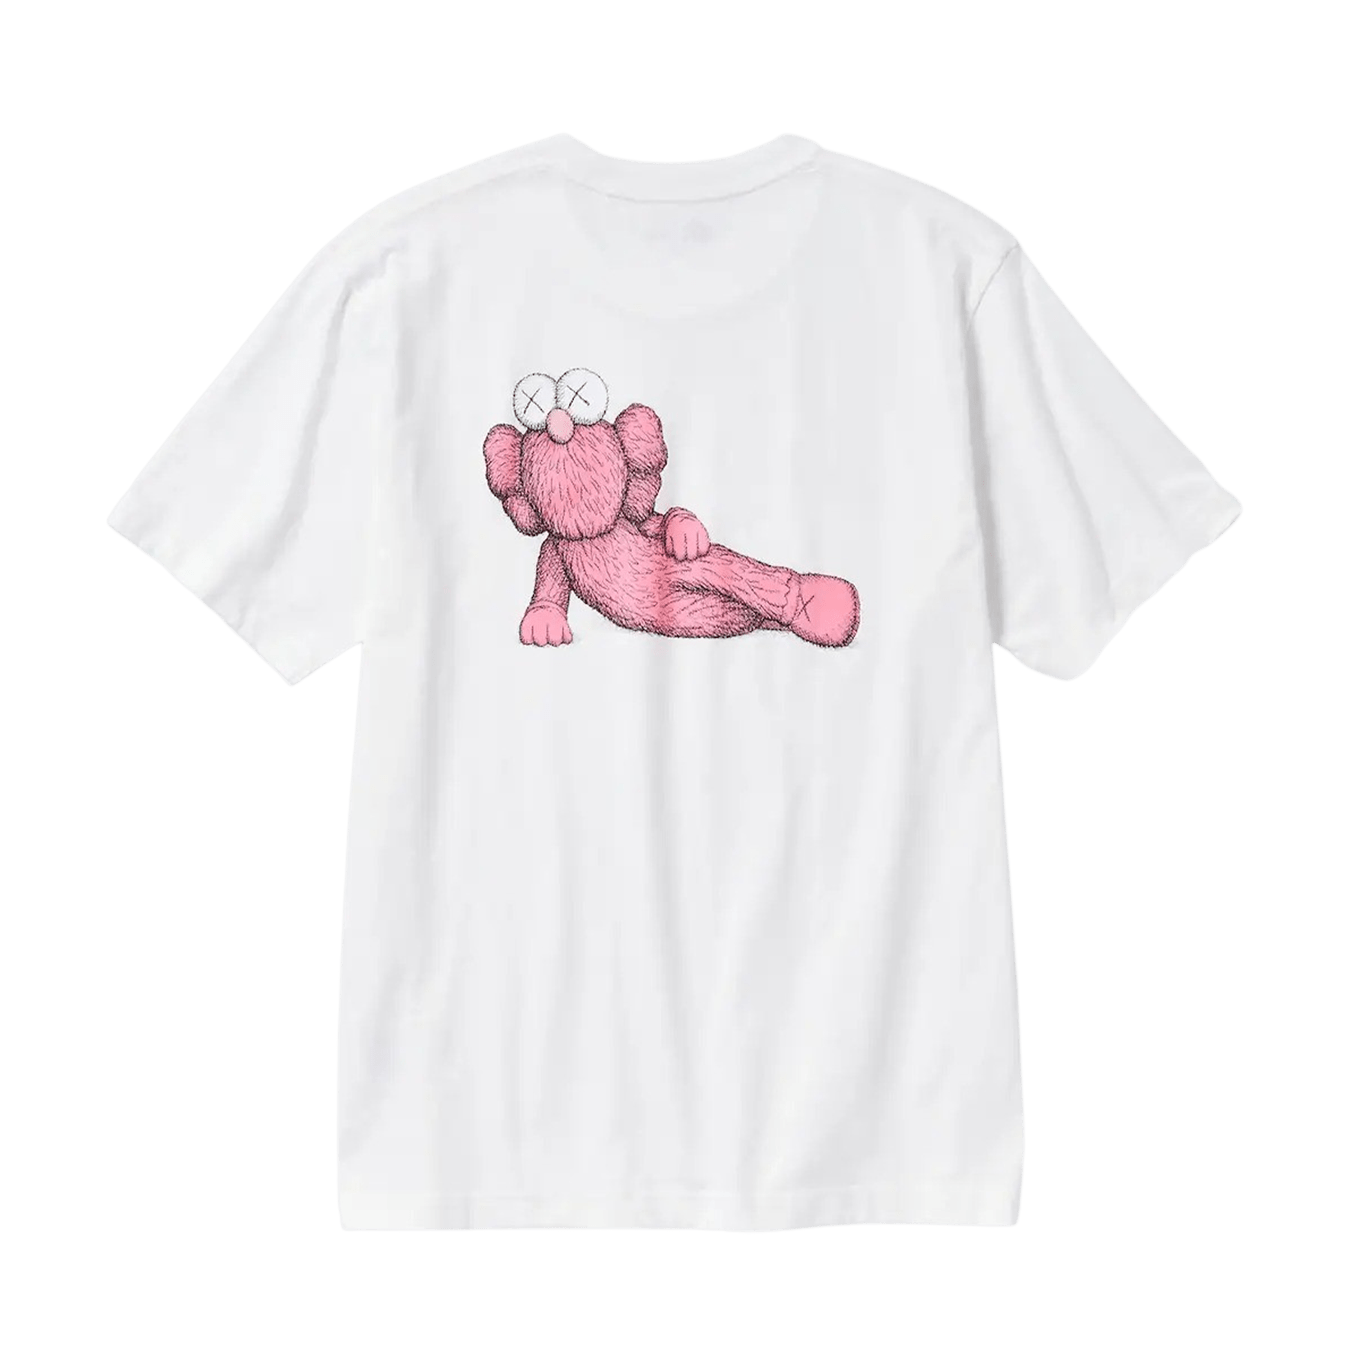 KAWS x UNIQLO UT Graphic T-Shirt White Pink